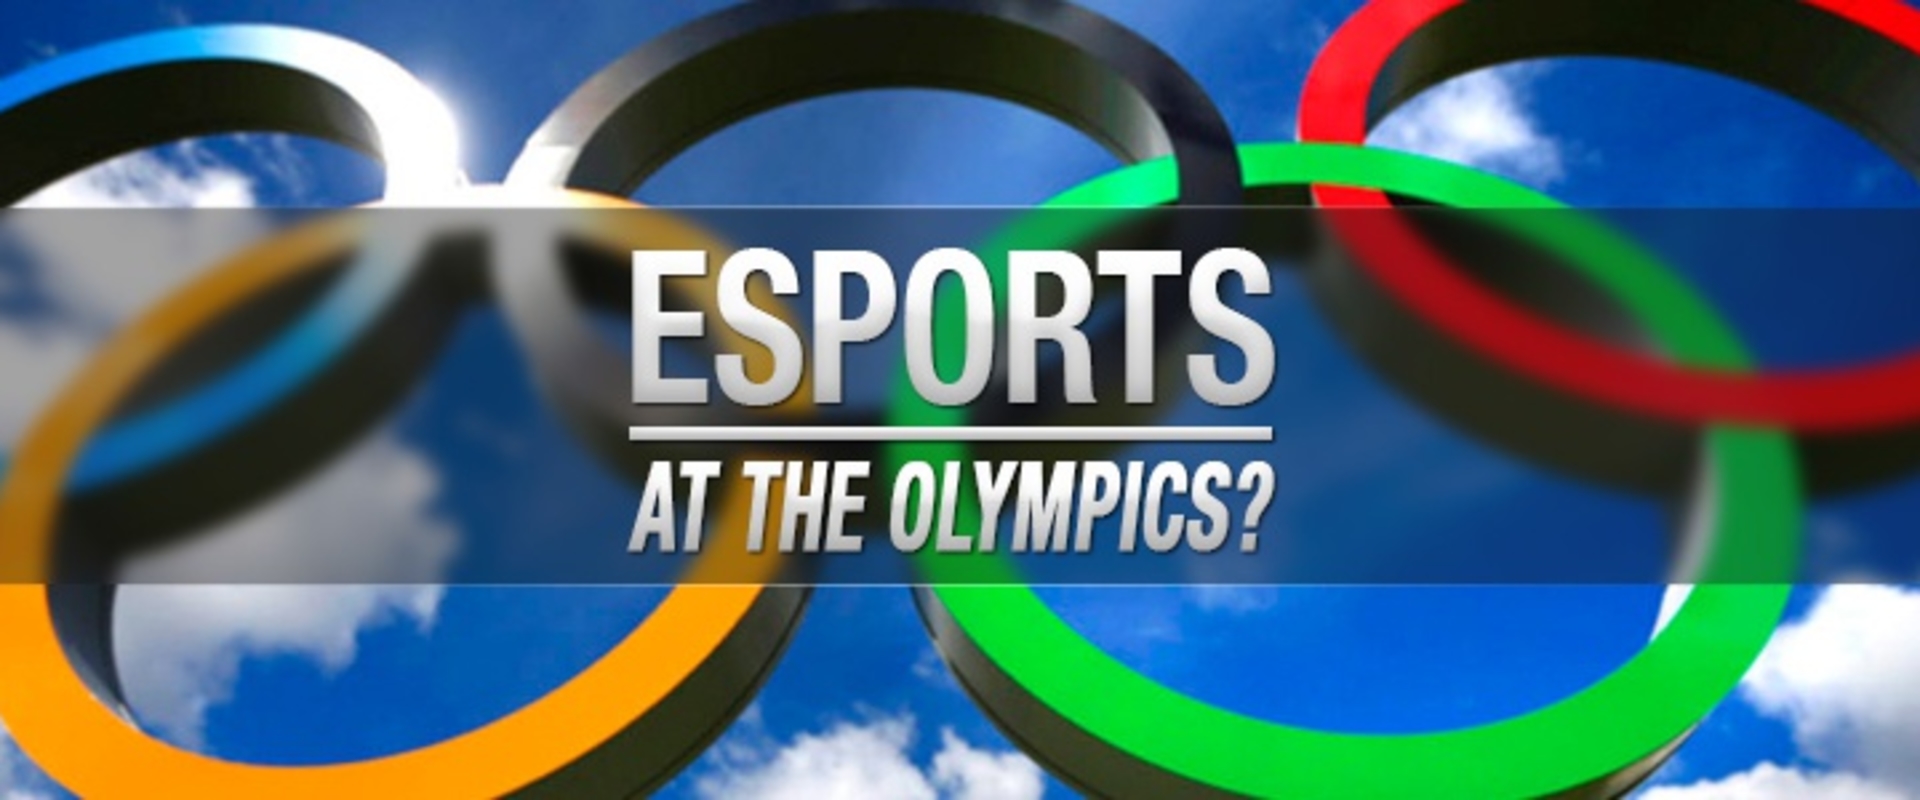 Az e-sport közösség is megoszlik Olimpia kérdésben